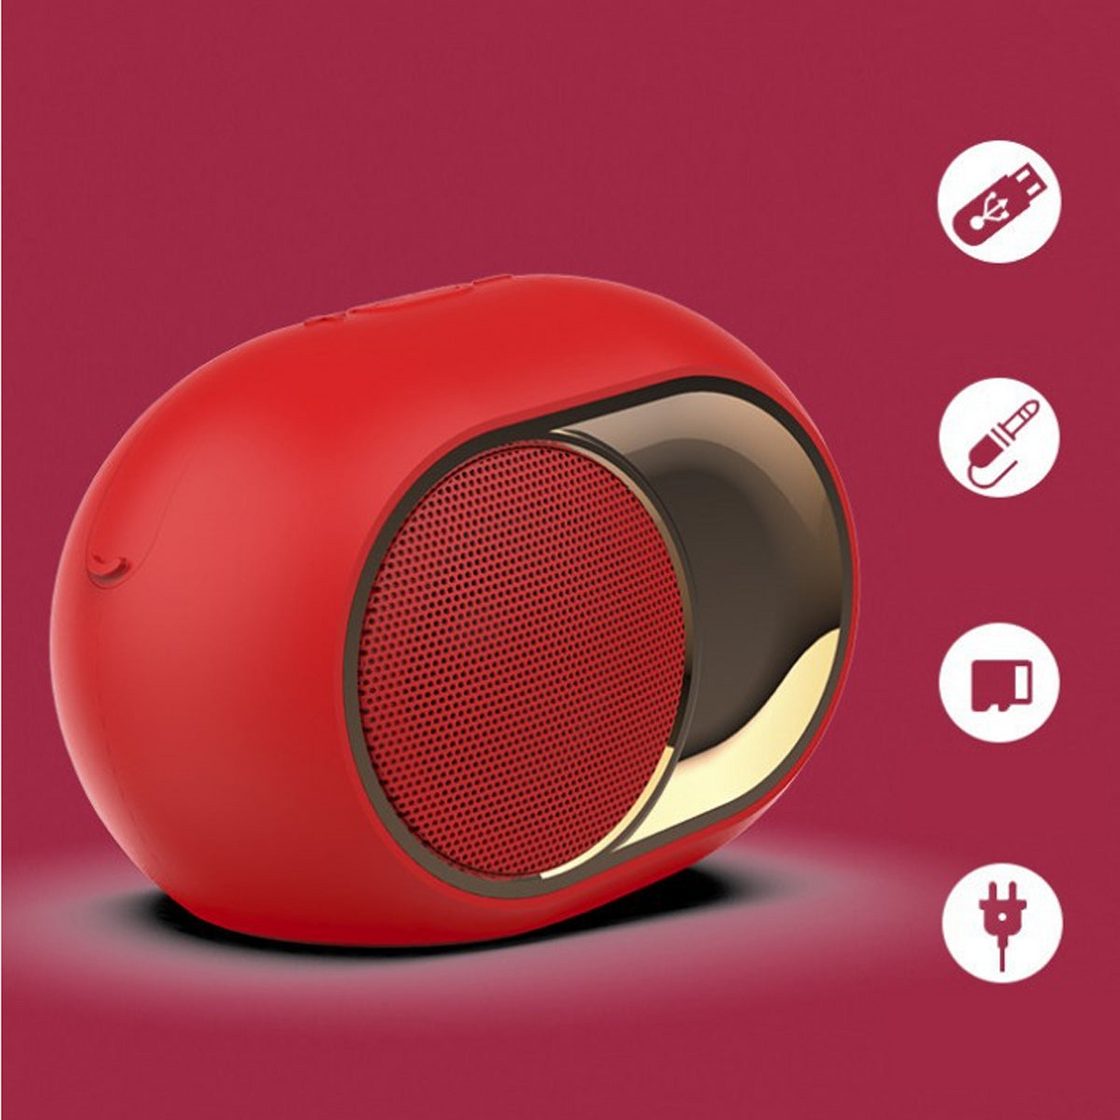 Olden Golden Bluetooth Speaker - Vintage European-Style with Super Sound